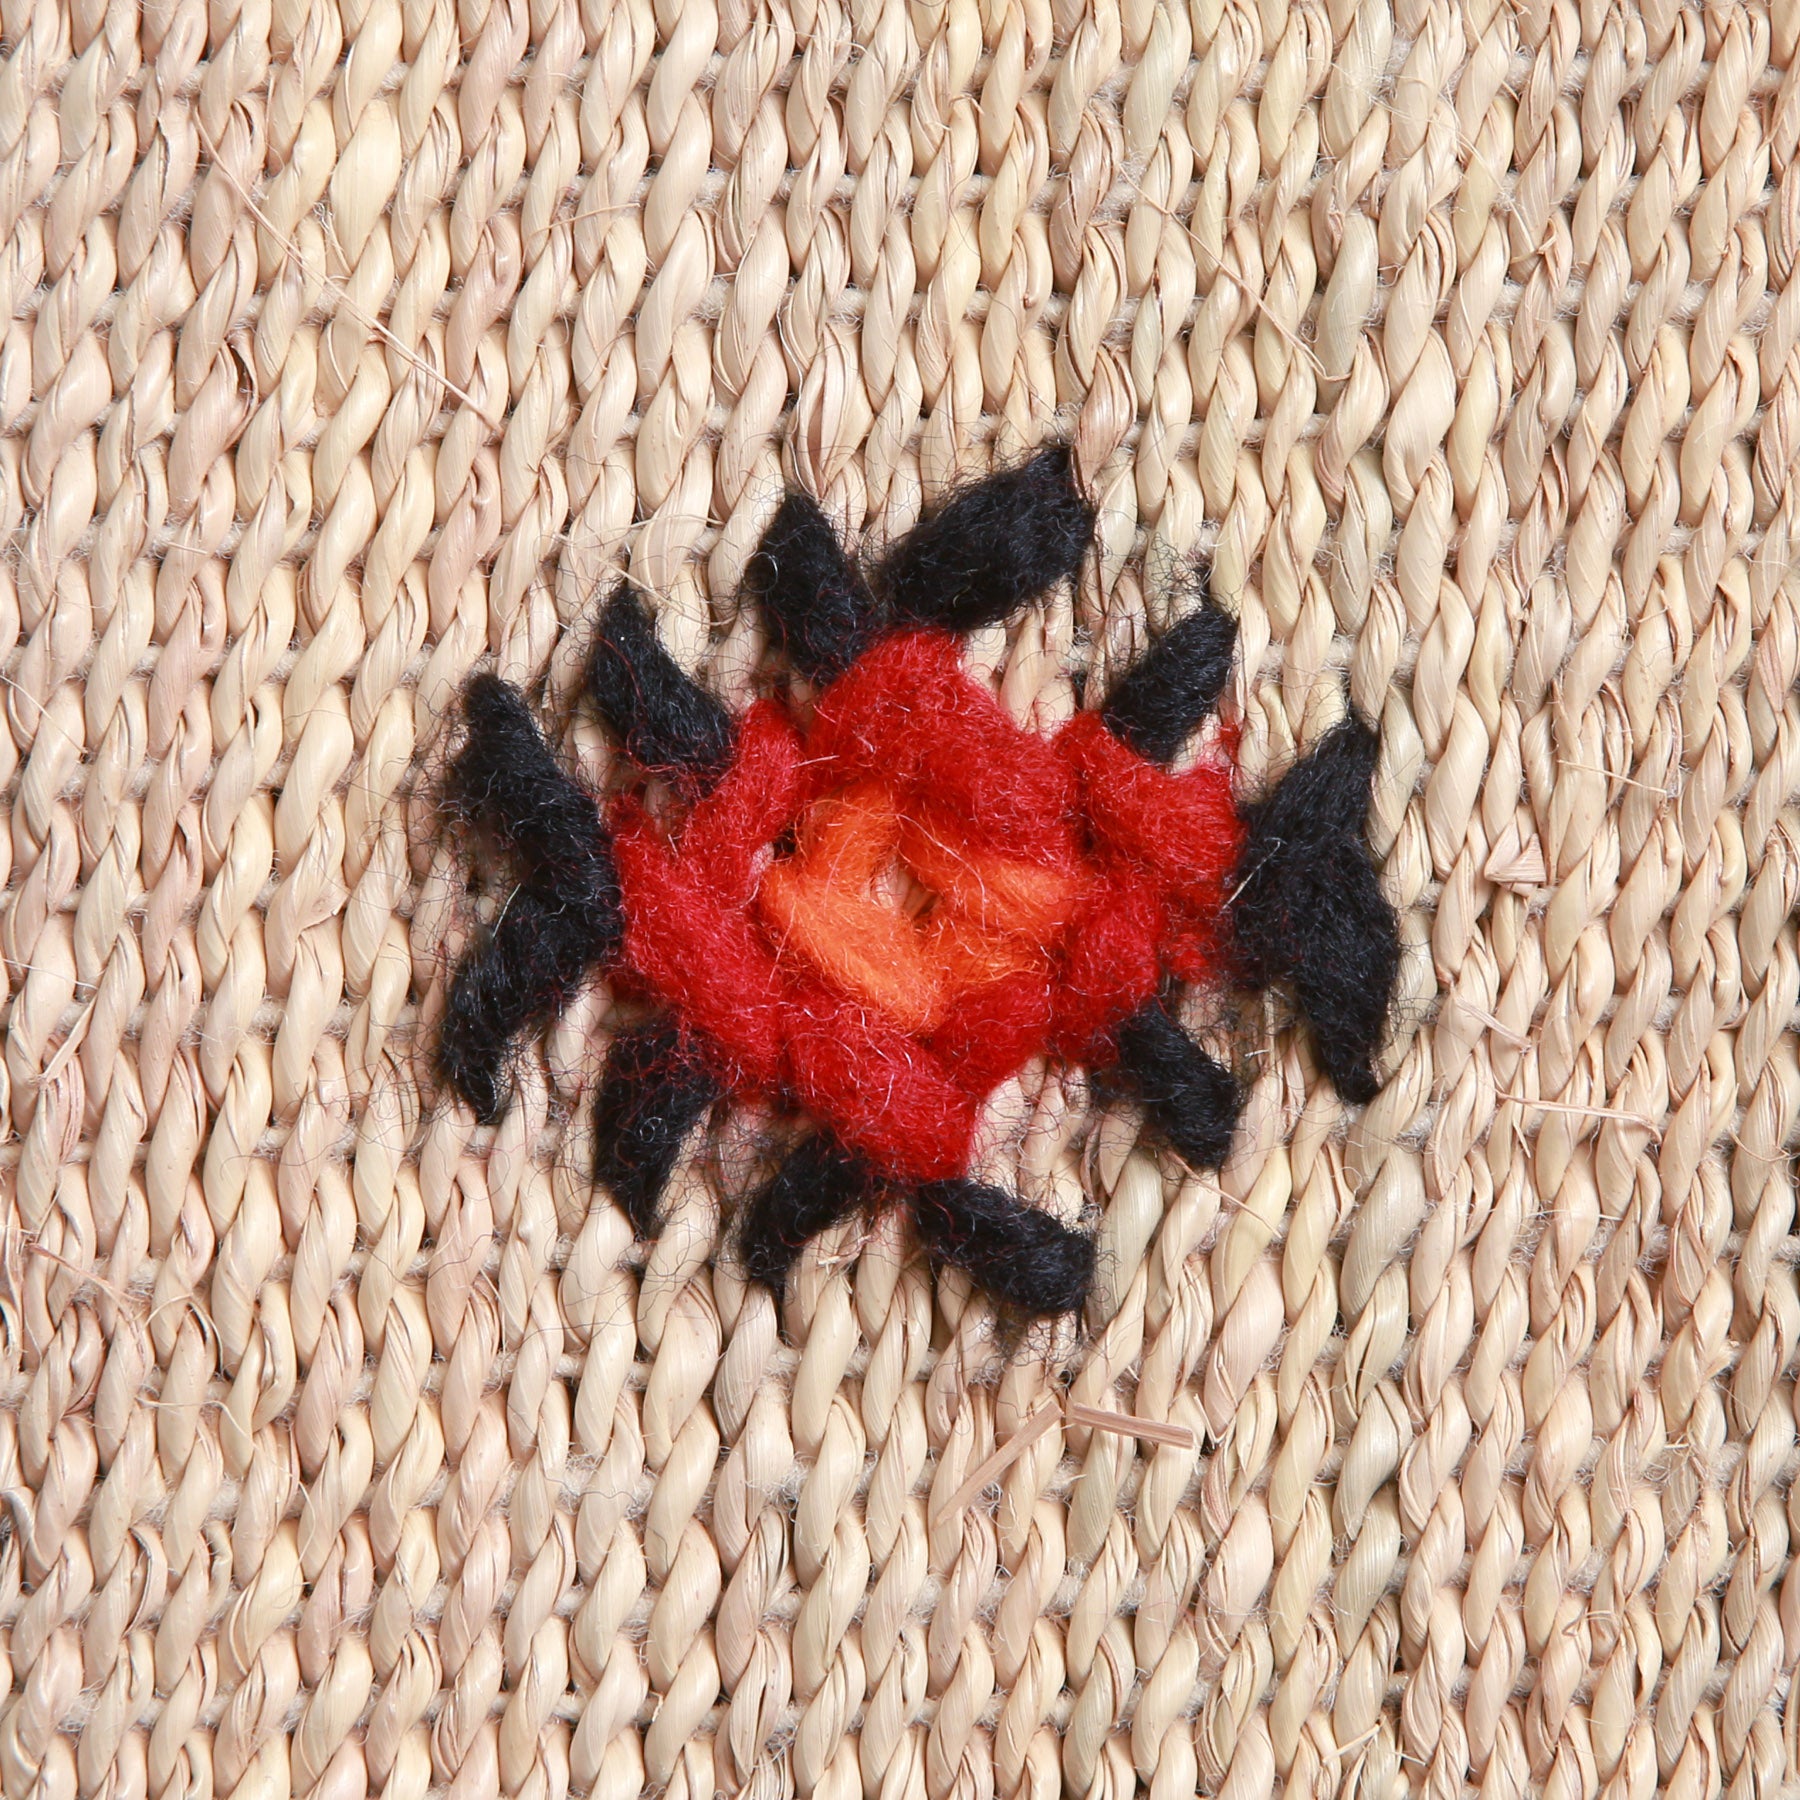 dettaglio di un ricamo amazigh in lana nera rossa e arancione presente su una stuoia in paglia di palma